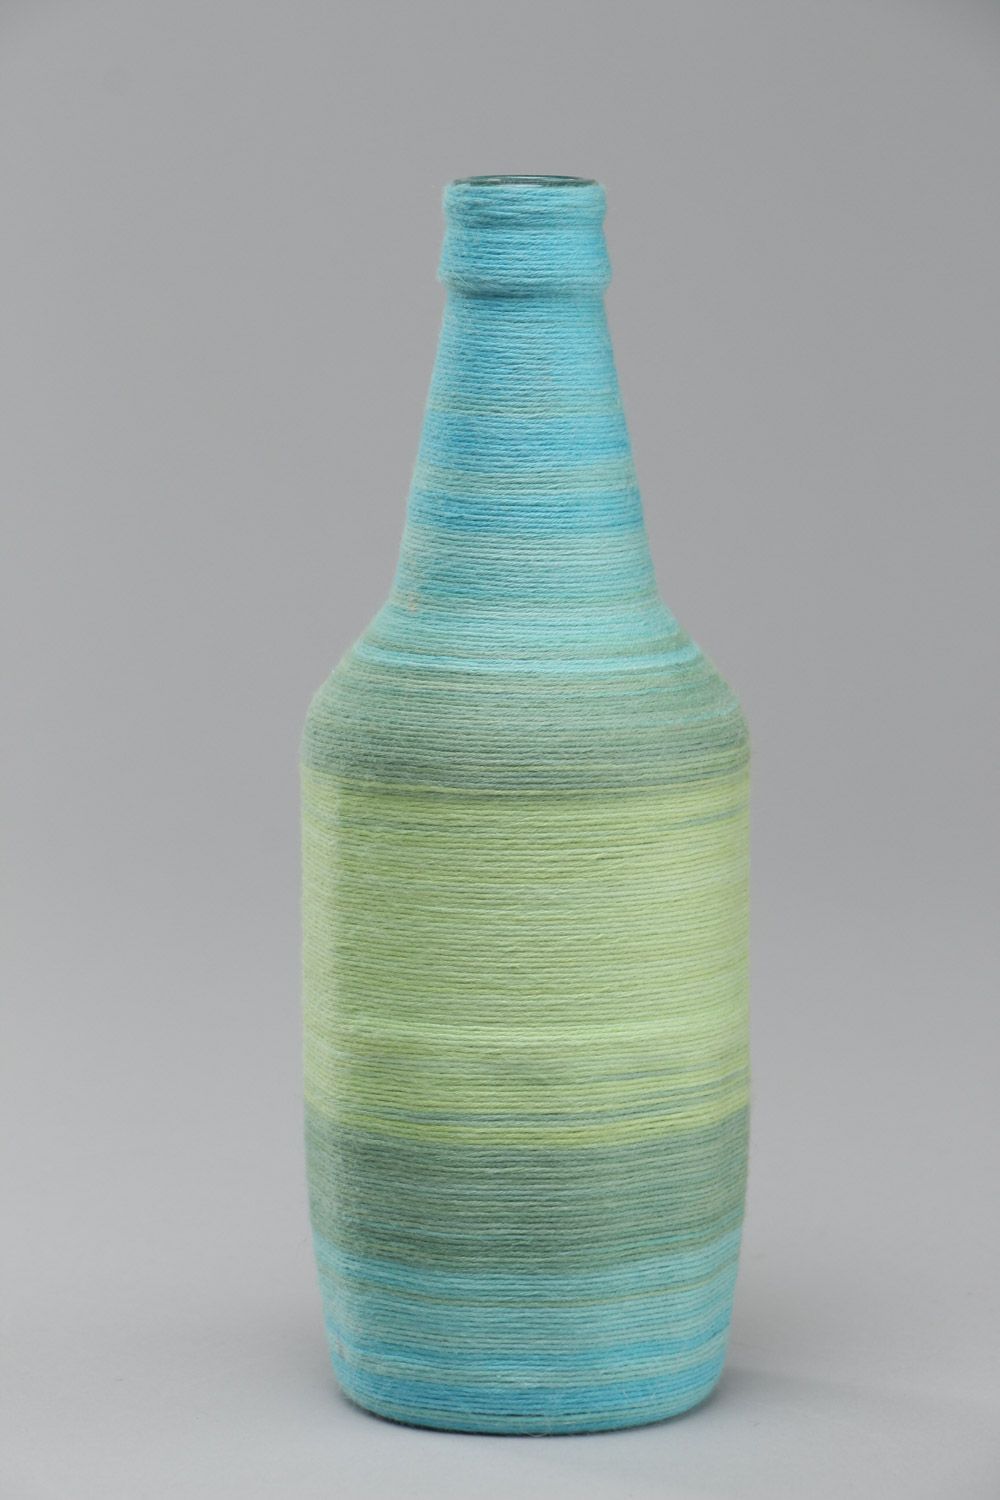 Blaue handmade dekorative Flasche aus Glas mit Baumwollfäden umflochten 500 ml foto 2